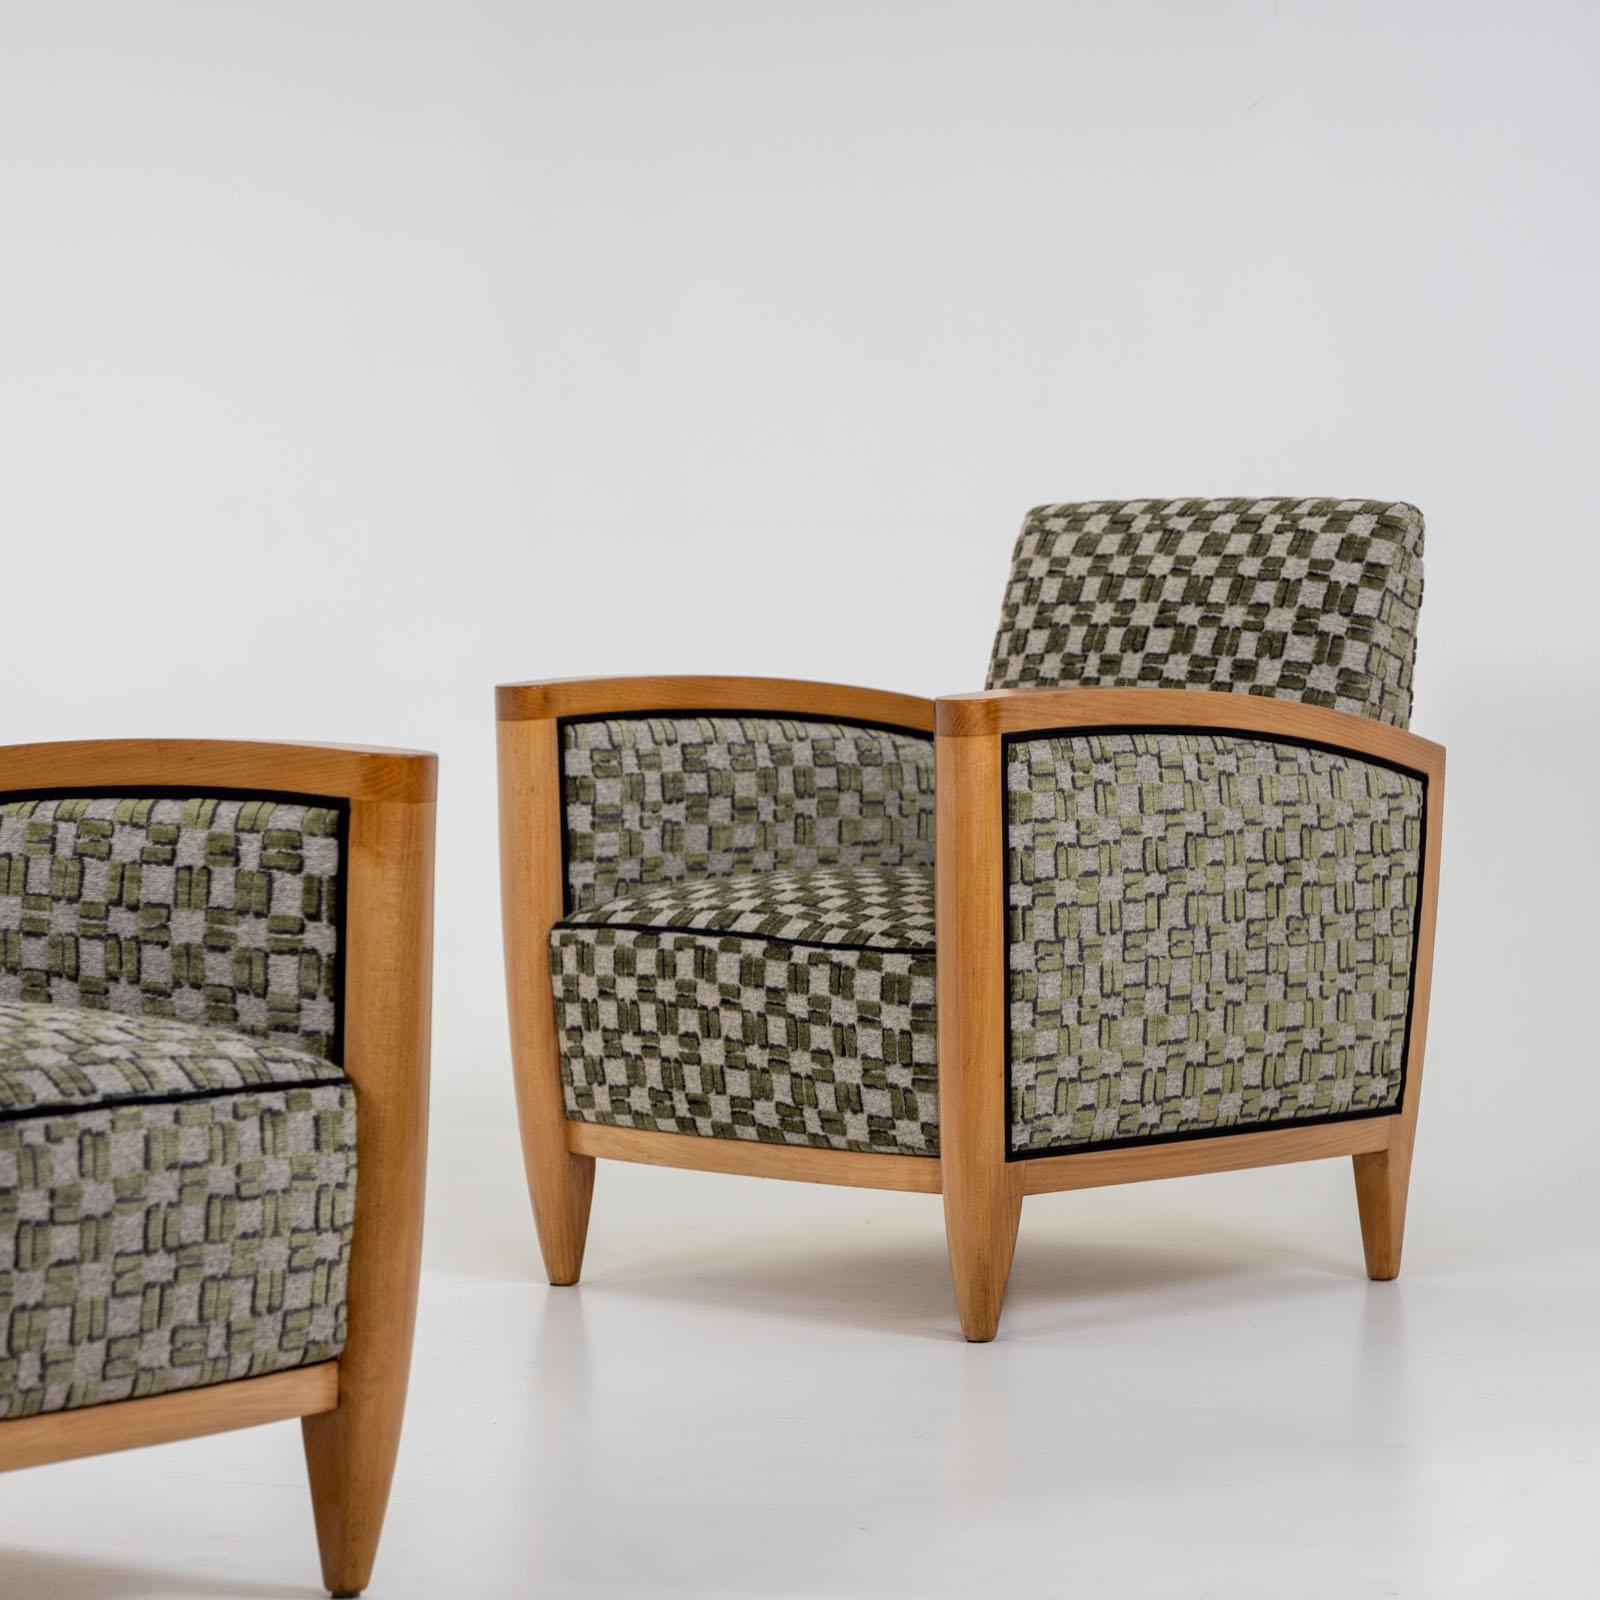 Paire de fauteuils Art Déco avec des cadres en bois clair et des accoudoirs subtilement courbés. Récemment rembourrées et méticuleusement polies à la main, ces chaises présentent un charmant tissu vert à carreaux. Le tissu présente une texture